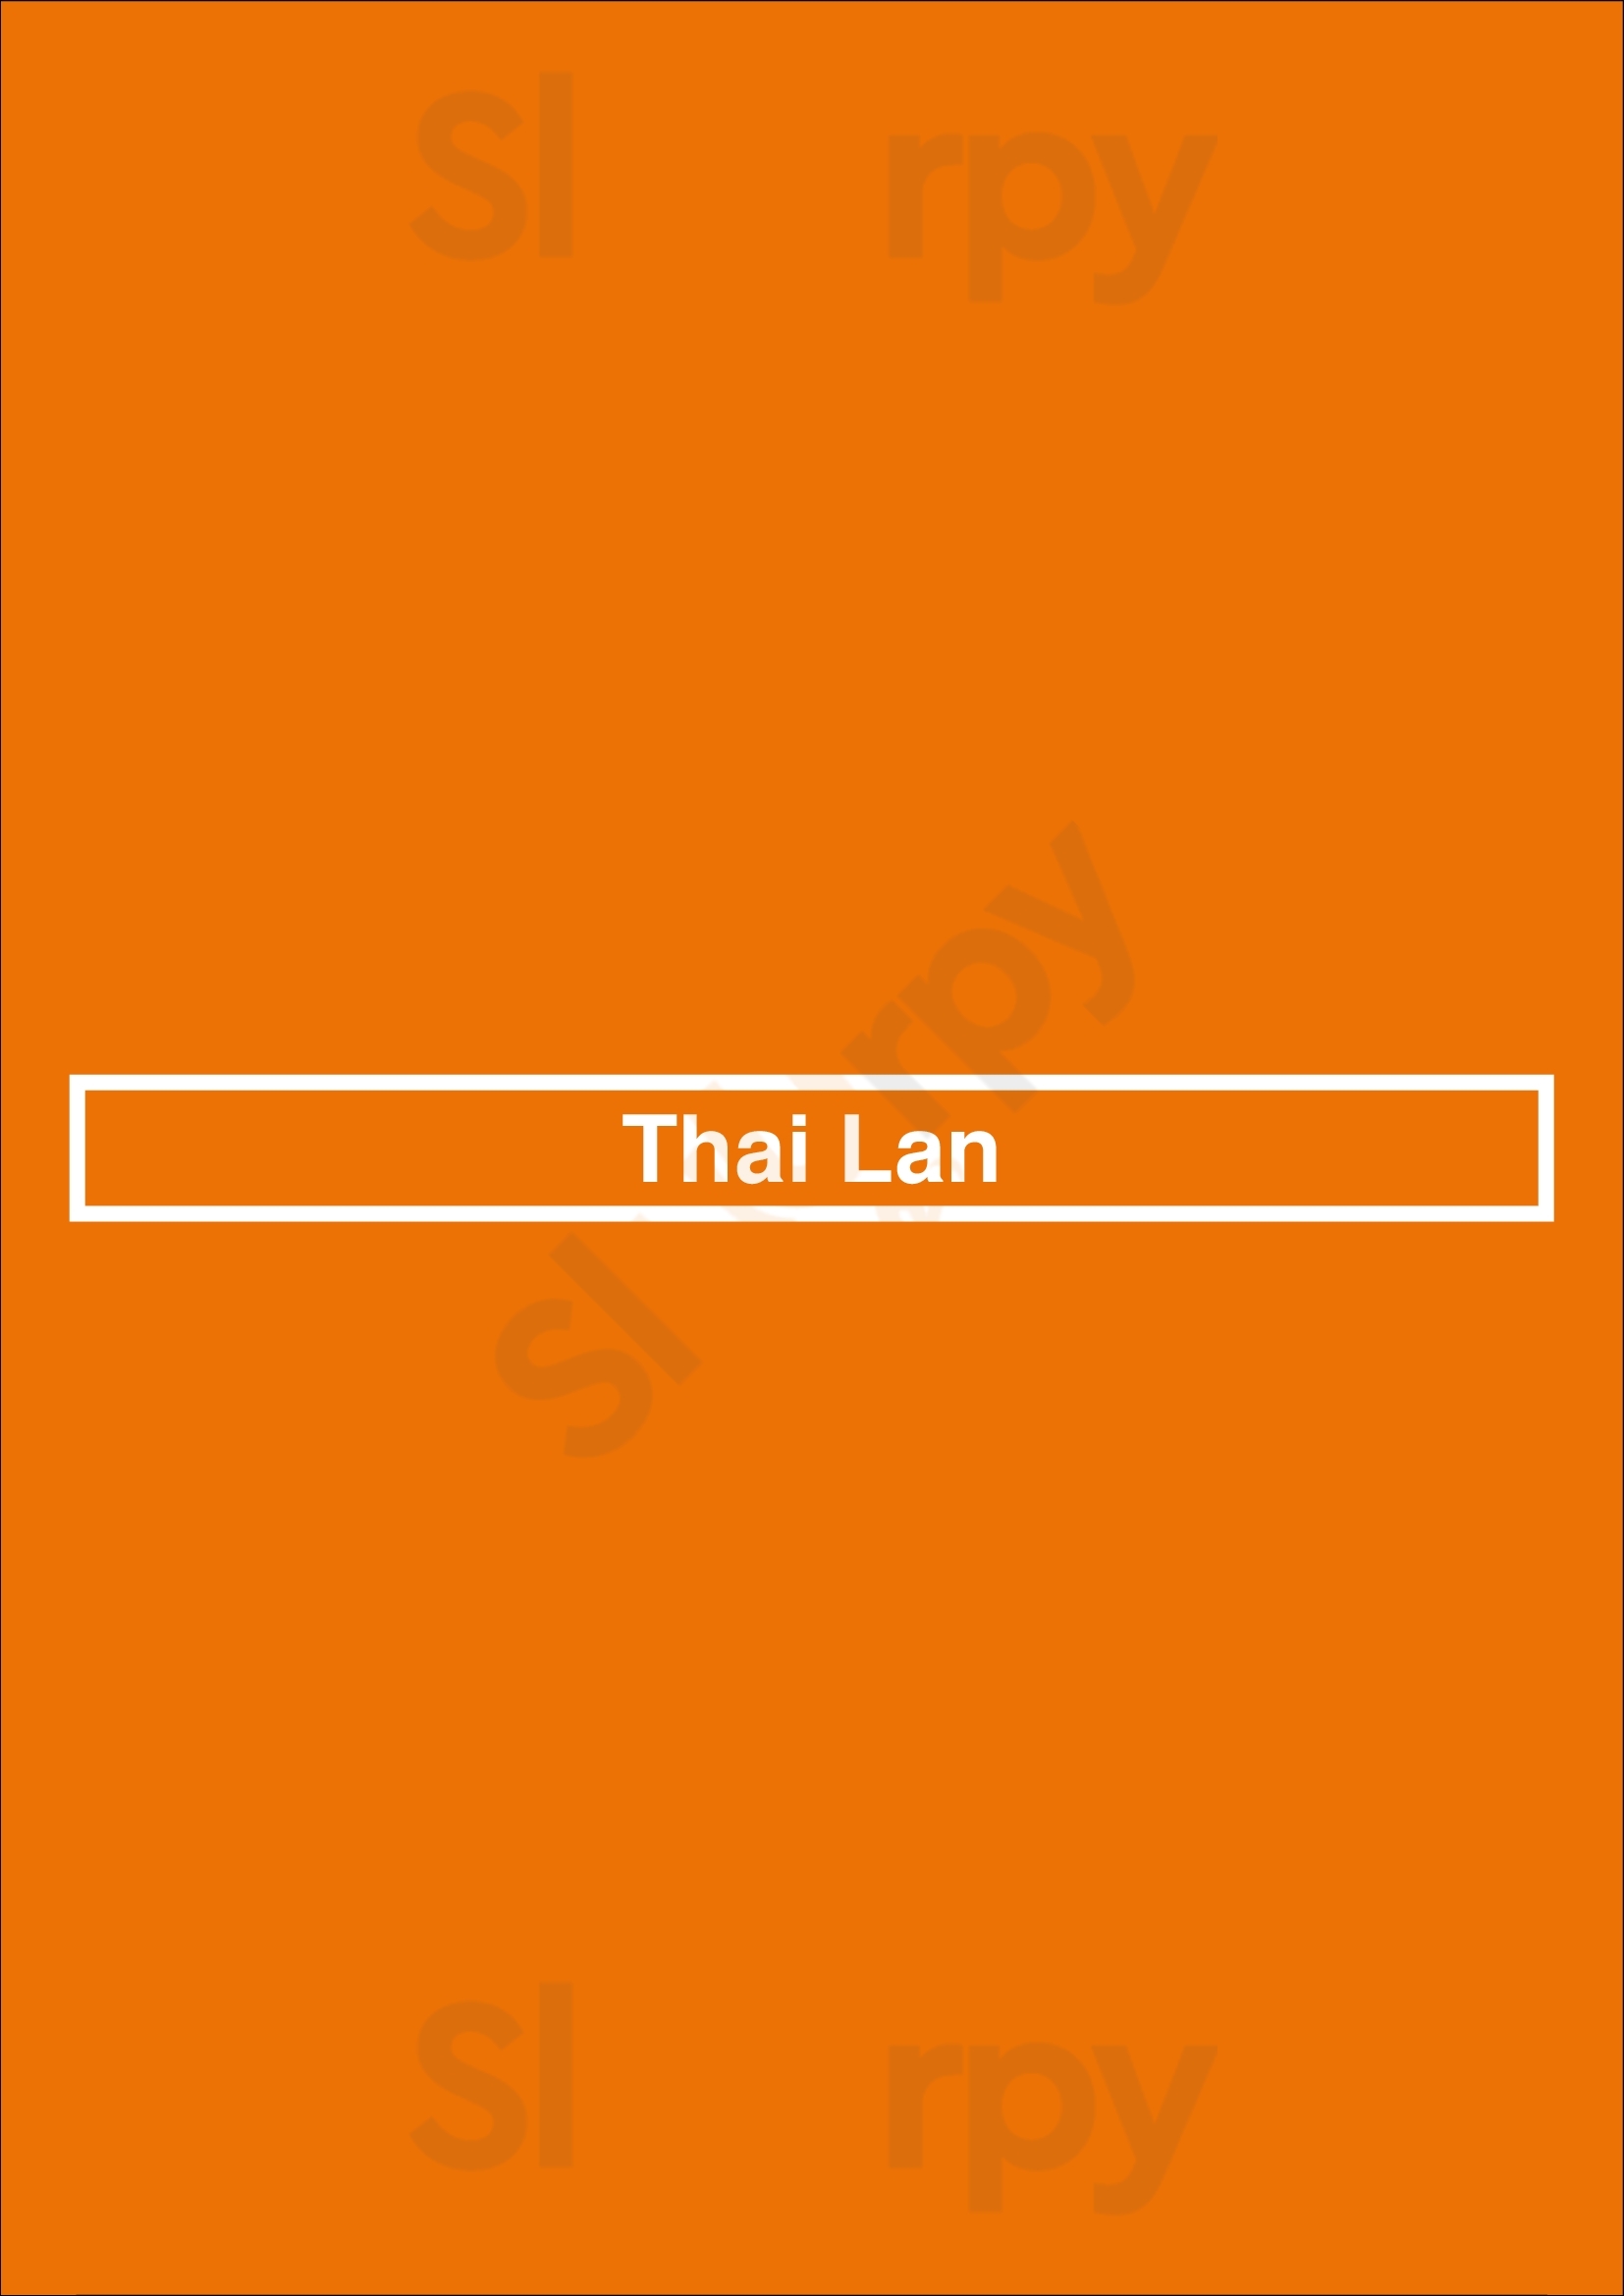 Thai Lan Oss Menu - 1